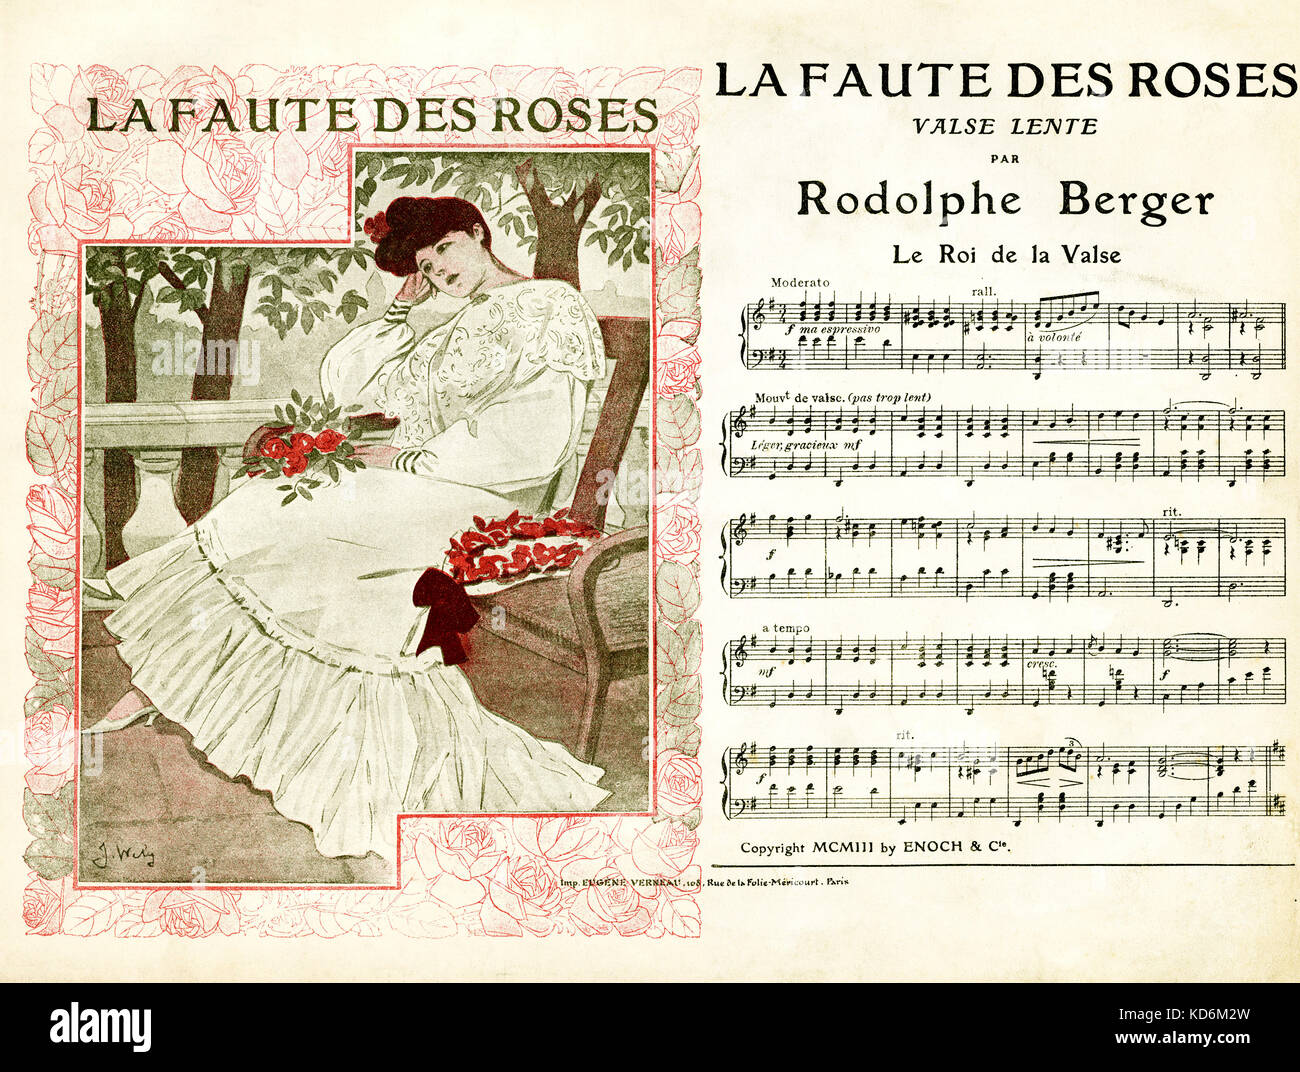 Pour couvrir Score valse lente ' La Faute des Roses '. Par Rodolphe Berger publié par Enoch & Cie, Paris. Conception de la couverture par J. Wely. Banque D'Images